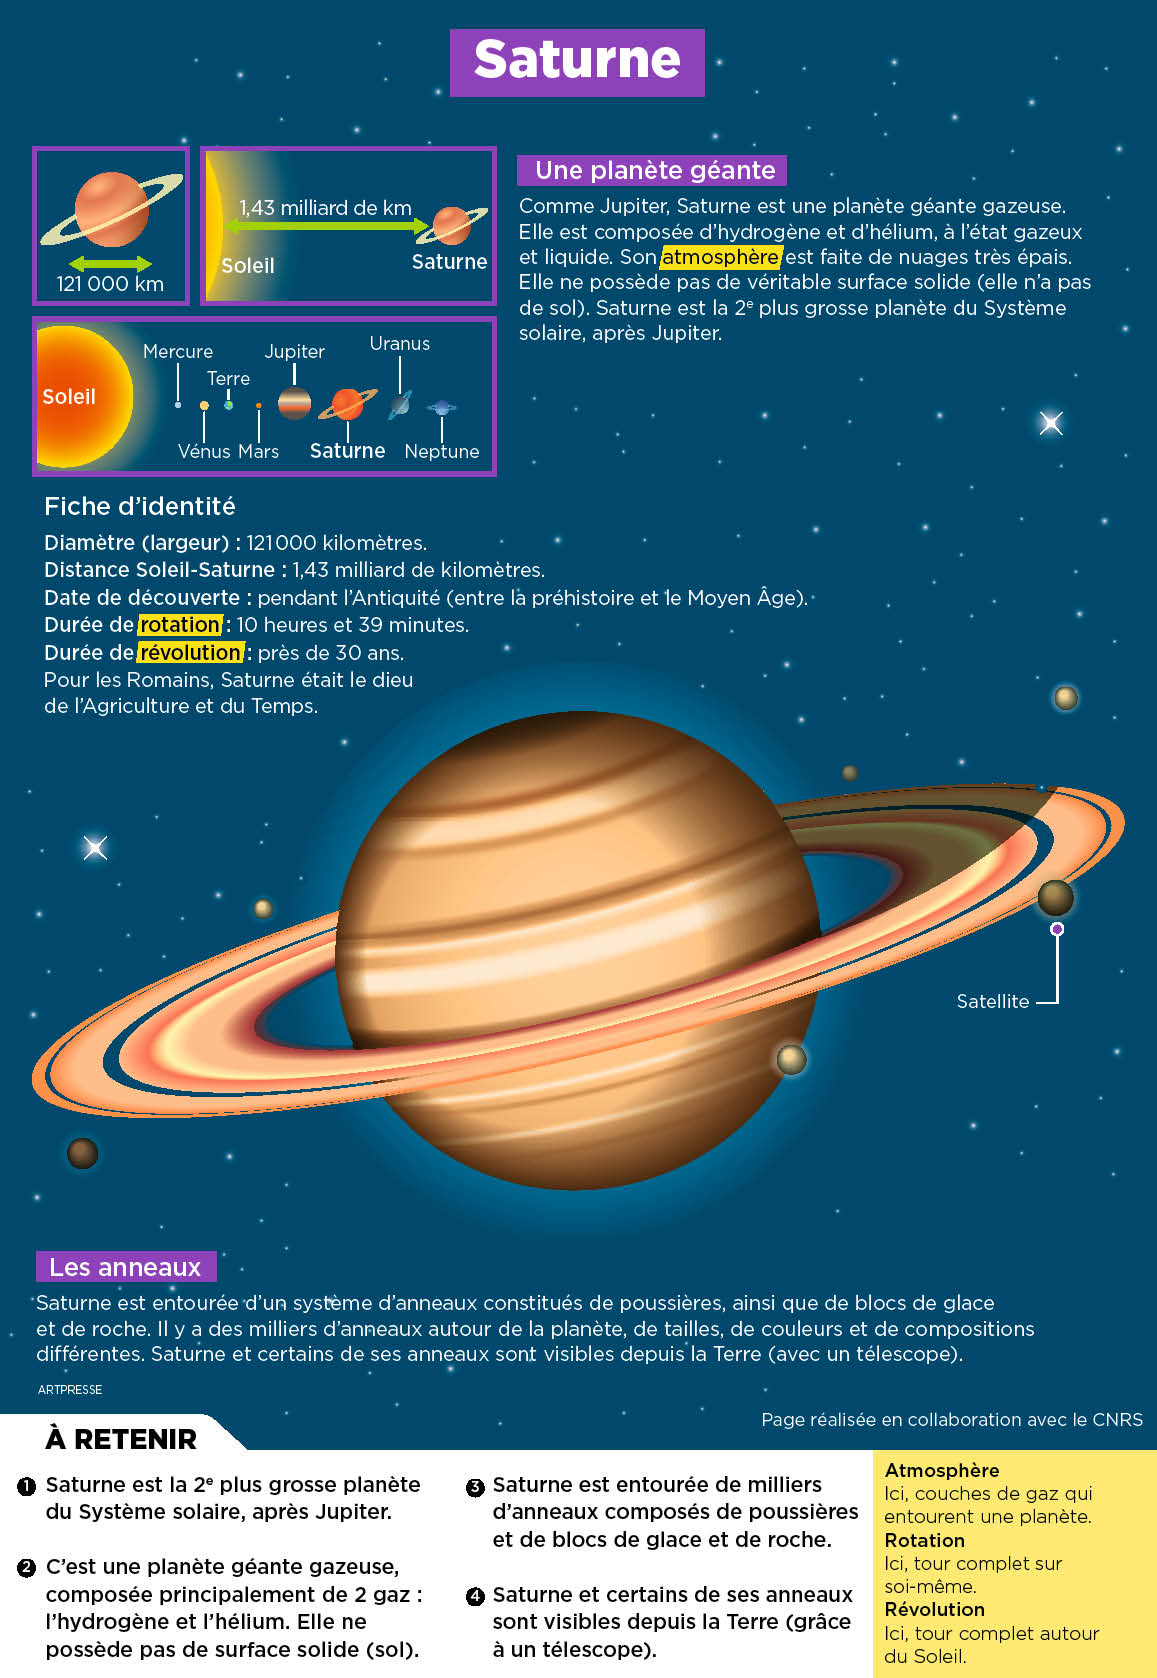 Saturne A 3 Lunes De Plus Que Jupiter Playbac Presse Digital Journaux Jeunesse Le Petit Quotidien Mon Quotidien L Actu L Eco Et Plus